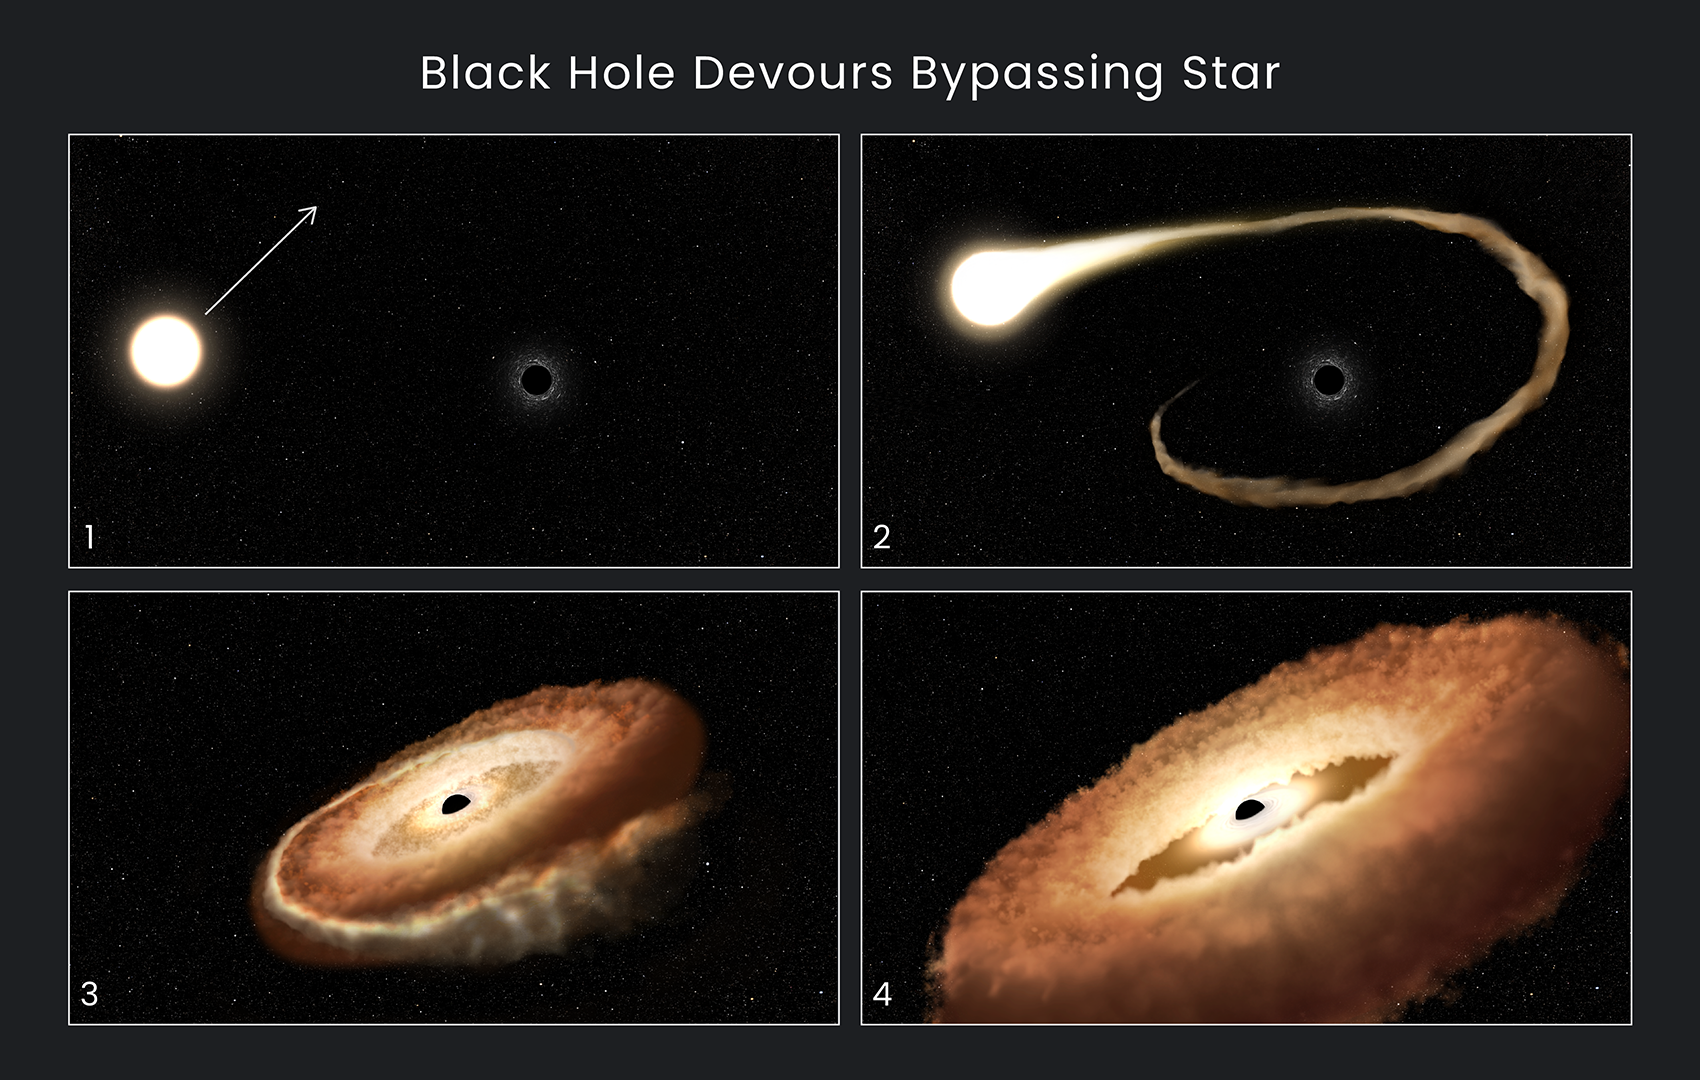 कलाकार के दृष्टांतों के इस क्रम से पता चलता है कि कैसे एक ब्लैक होल एक बाईपासिंग स्टार को खा सकता है।  1. एक सामान्य तारा एक आकाशगंगा के केंद्र में एक सुपरमैसिव ब्लैक होल के पास से गुजरता है।  2. तारे की बाहरी गैसें ब्लैक होल के गुरुत्वाकर्षण क्षेत्र में खींची जाती हैं।  3. तारा टूट जाता है क्योंकि ज्वारीय बल इसे अलग कर देते हैं।  4. तारकीय अवशेष ब्लैक होल के चारों ओर एक डोनट के आकार की अंगूठी में खींचे जाते हैं, और अंततः ब्लैक होल में गिर जाते हैं, जिससे भारी मात्रा में प्रकाश और उच्च-ऊर्जा विकिरण निकलता है।